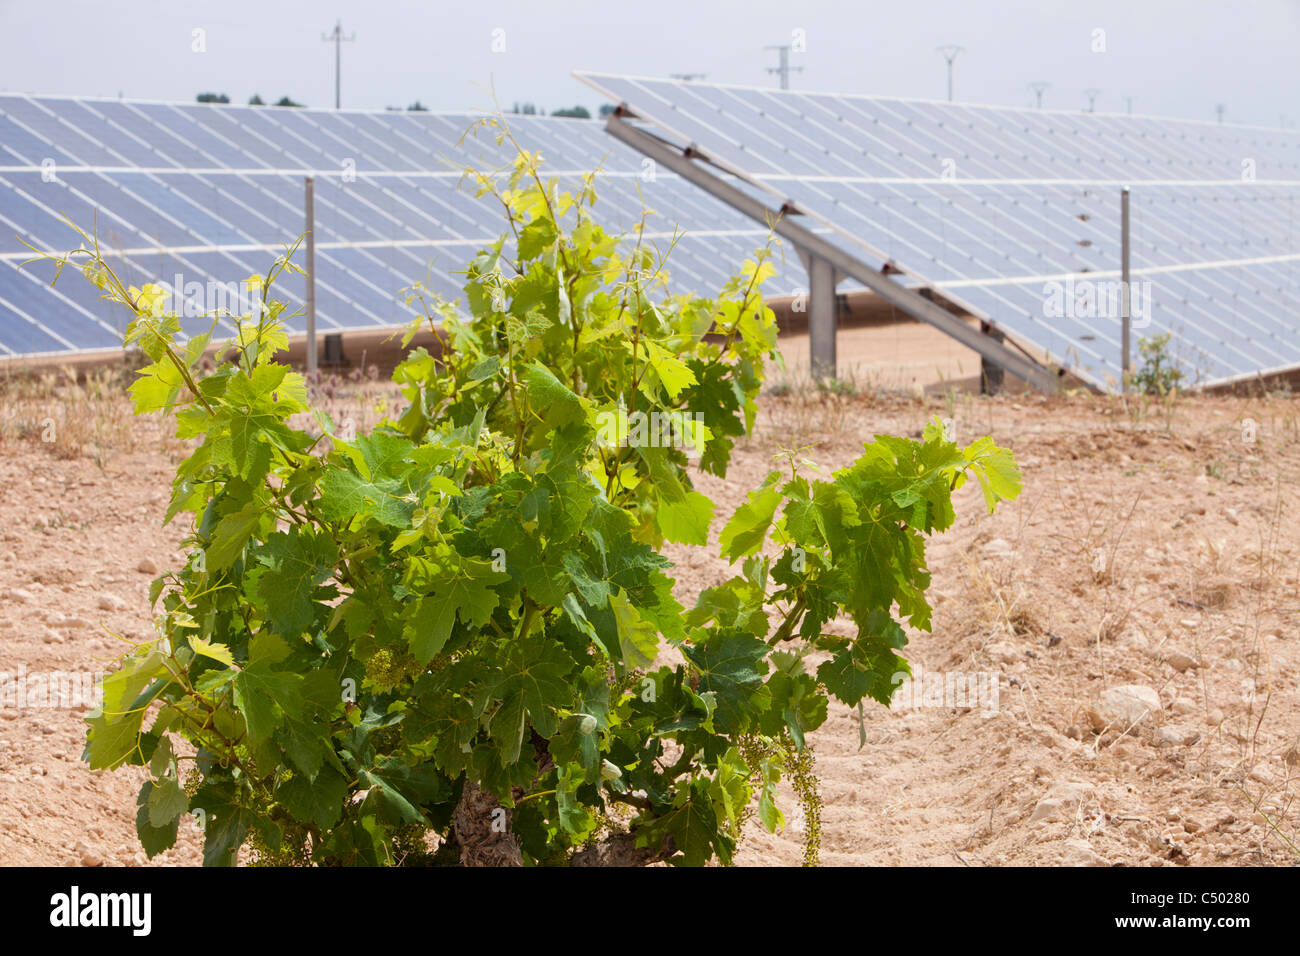 Ein Photovoltaik solar Kraftwerk in der Nähe von Jumilla, Mercia, Spanien und ein Weingut. Stockfoto